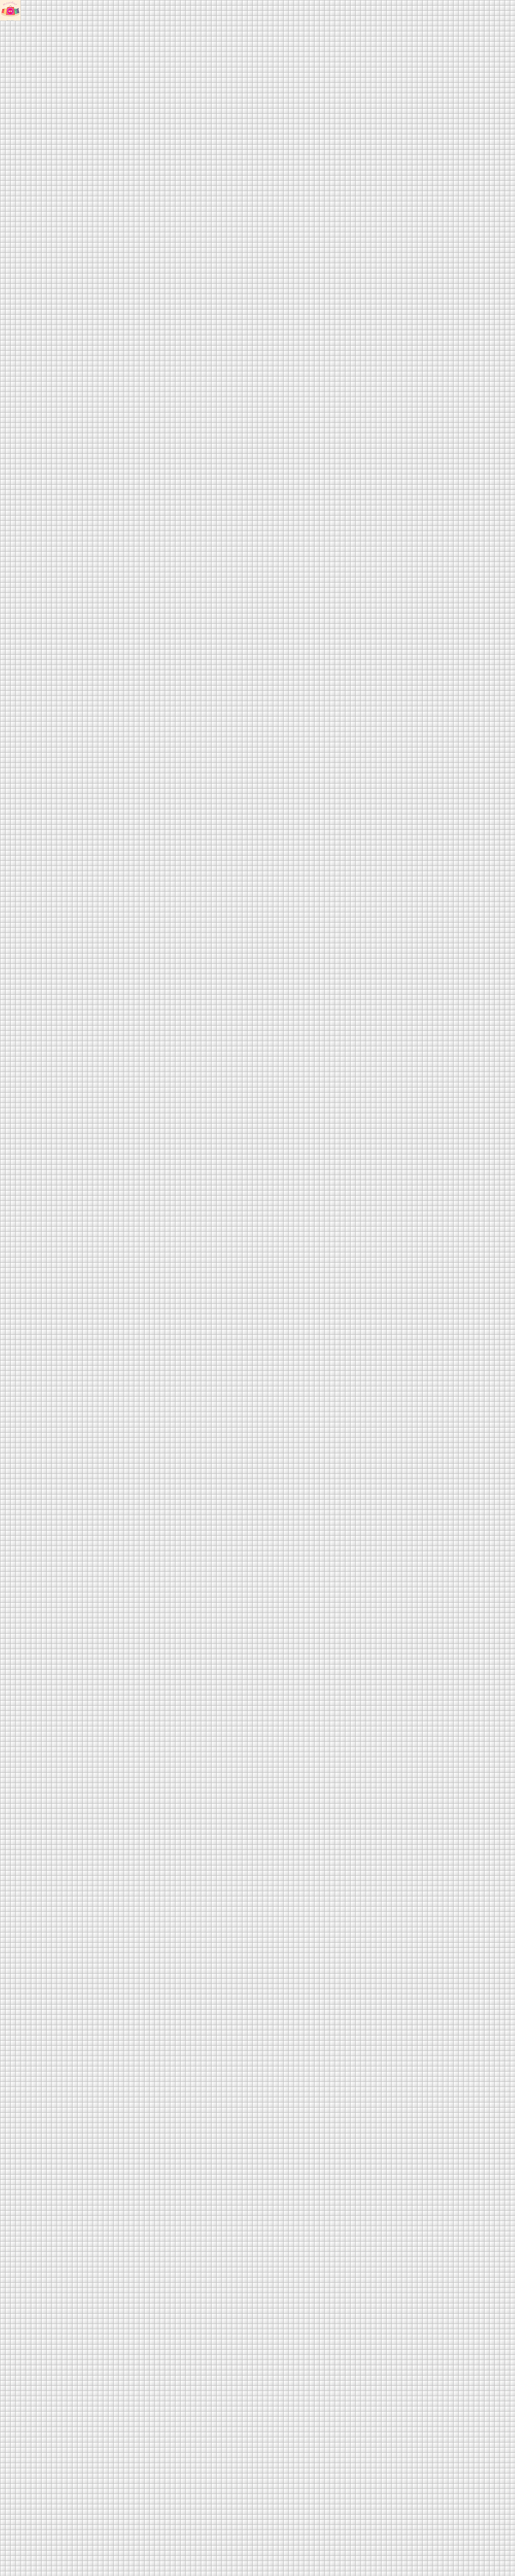 All of Pixels